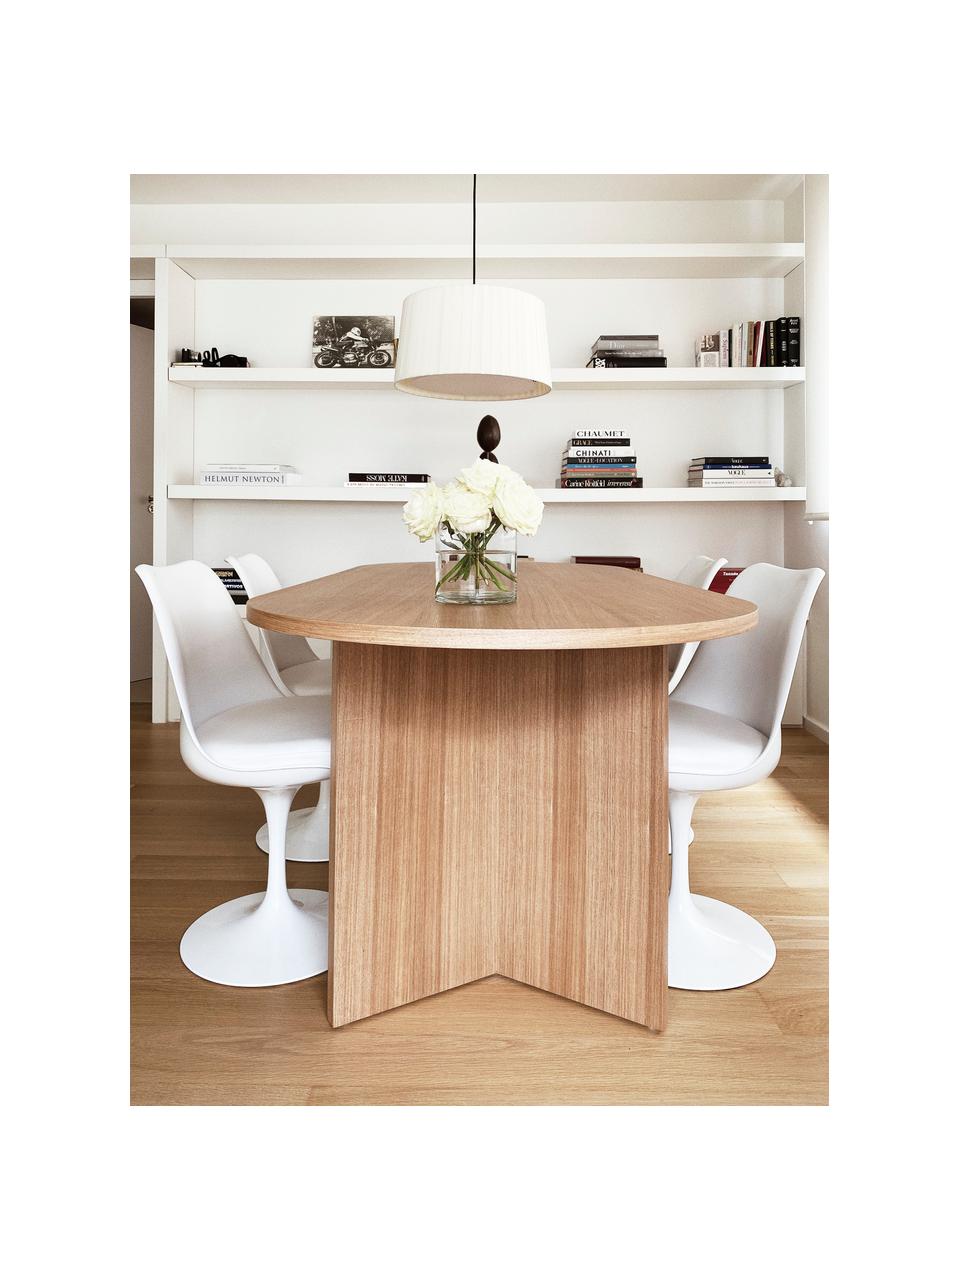 Dřevěný oválný jídelní stůl Toni, 200 x 90 cm, Lakovaná MDF deska (dřevovláknitá deska střední hustoty) s dubovou dýhou, Jasanové dřevo, Š 200 cm, H 90 cm